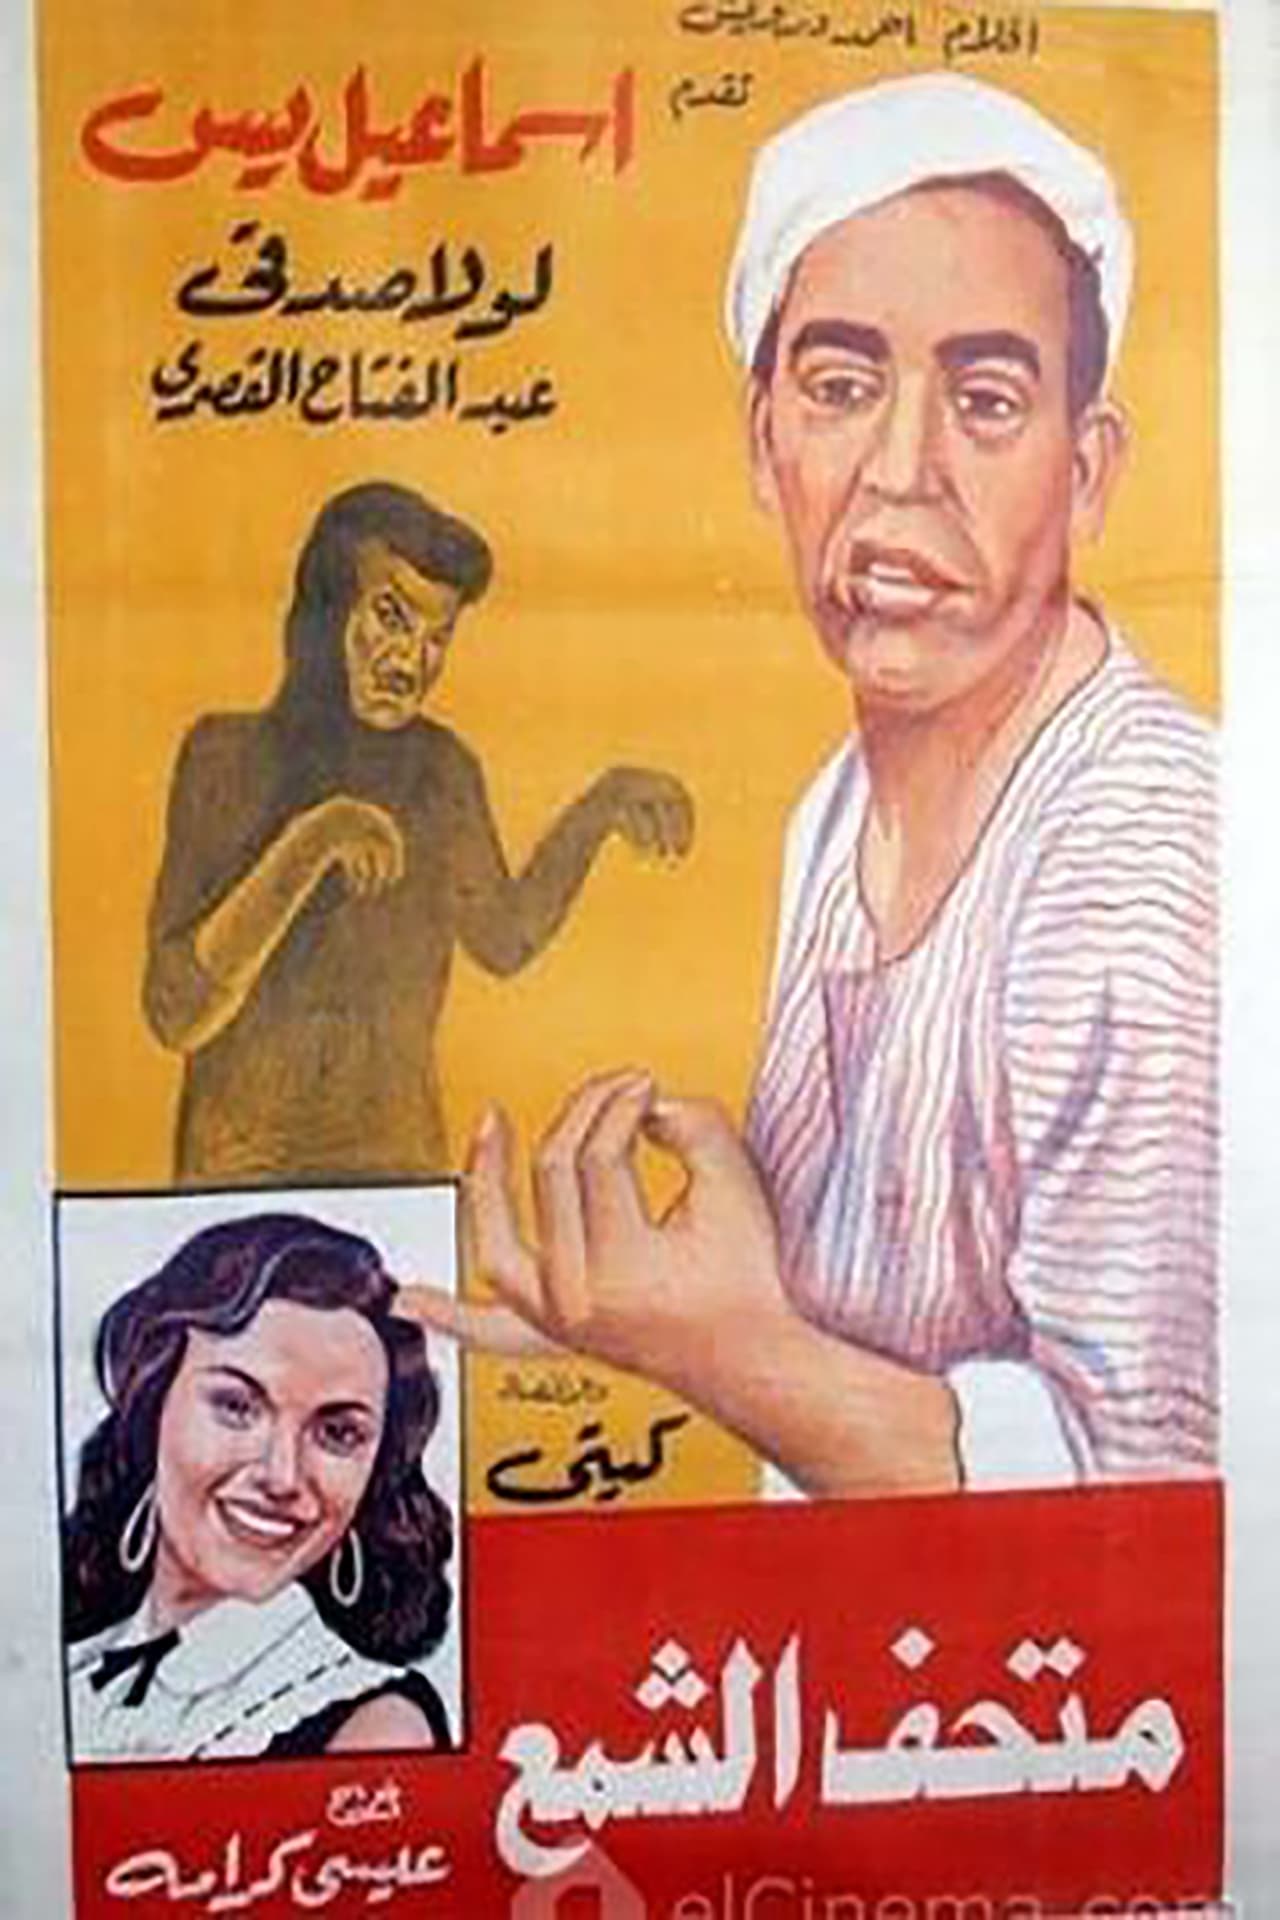 إسماعيل ياسين فى متحف الشمع